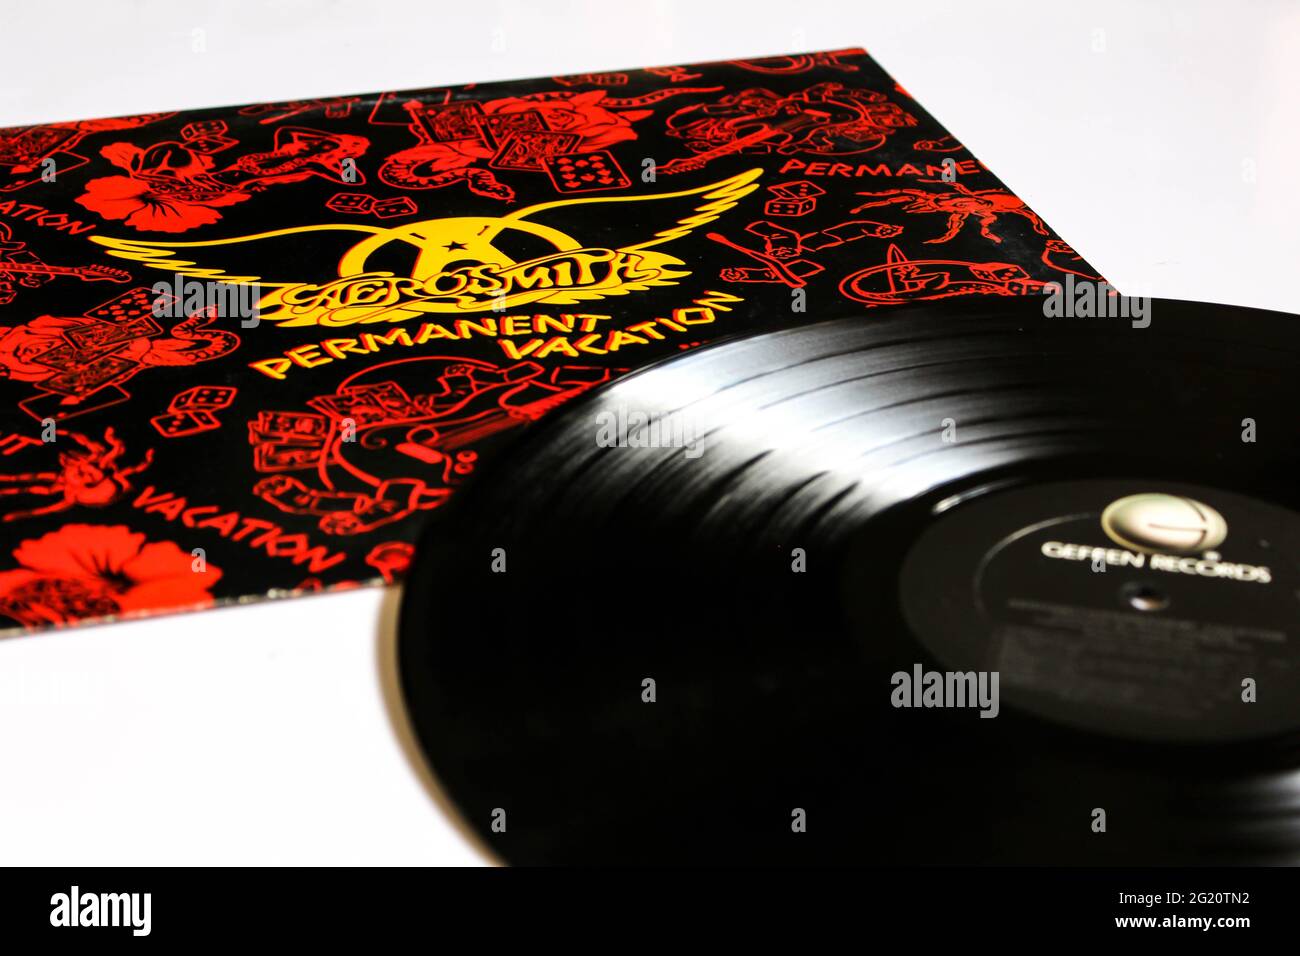 Klassische Rockband, Aerosmith, Musikalbum auf Vinyl-Schallplatte. Mit Dem Titel „Permanenter Urlaub“. Albumcover Stockfoto